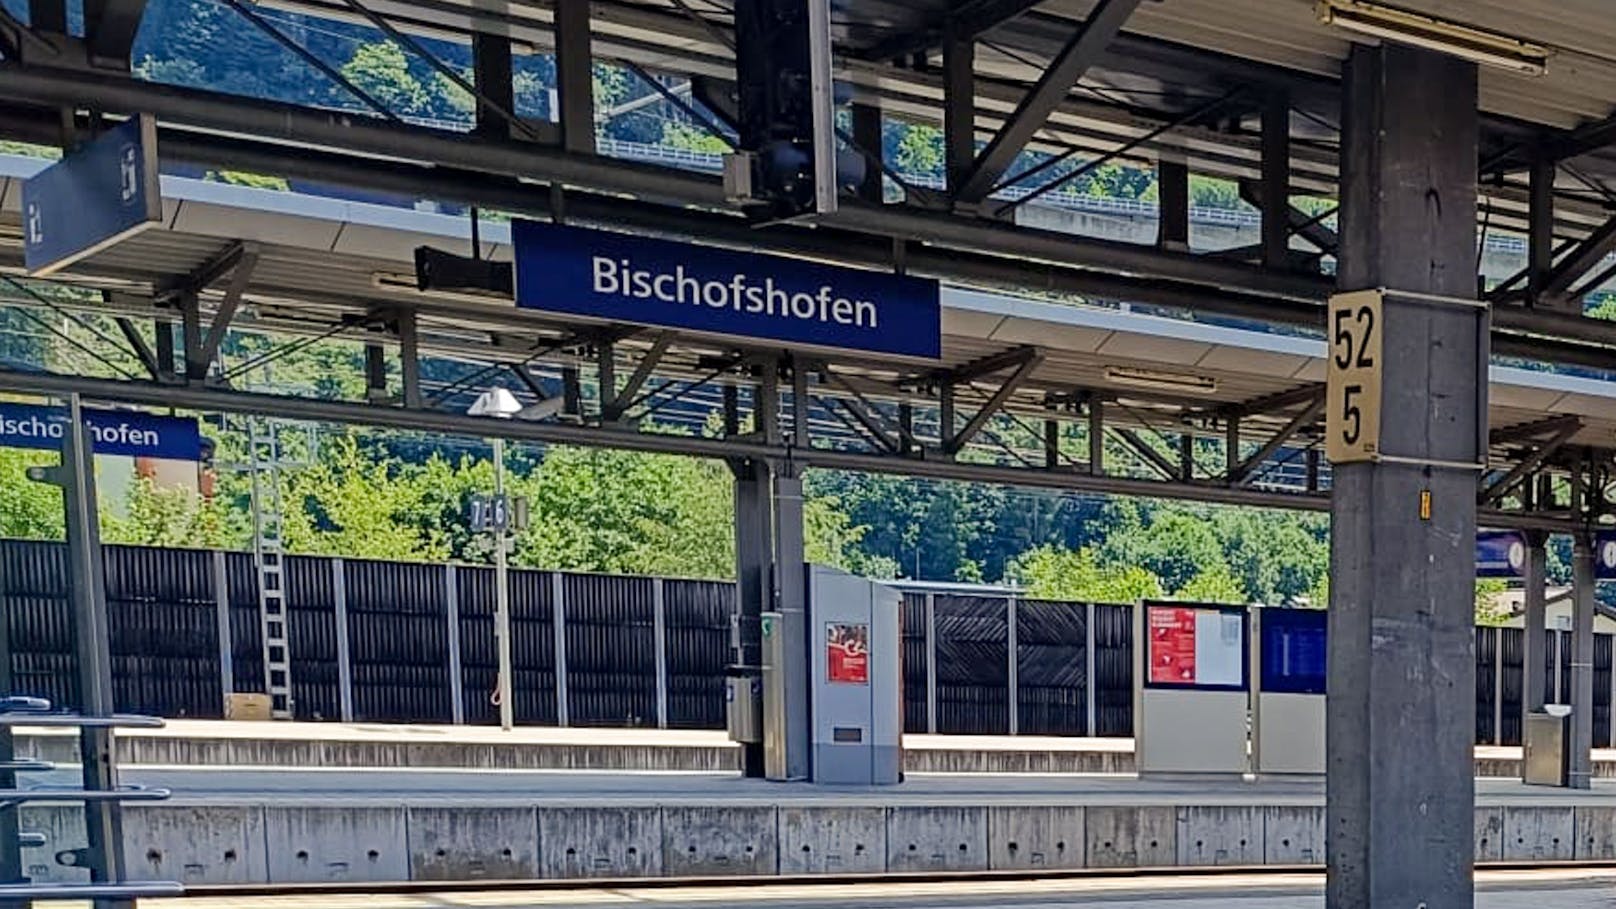 Am Bahnhof Bischofshofen wurde ein 21-Jähriger am Sonntagabend von zehn Jugendlichen brutal attackiert.